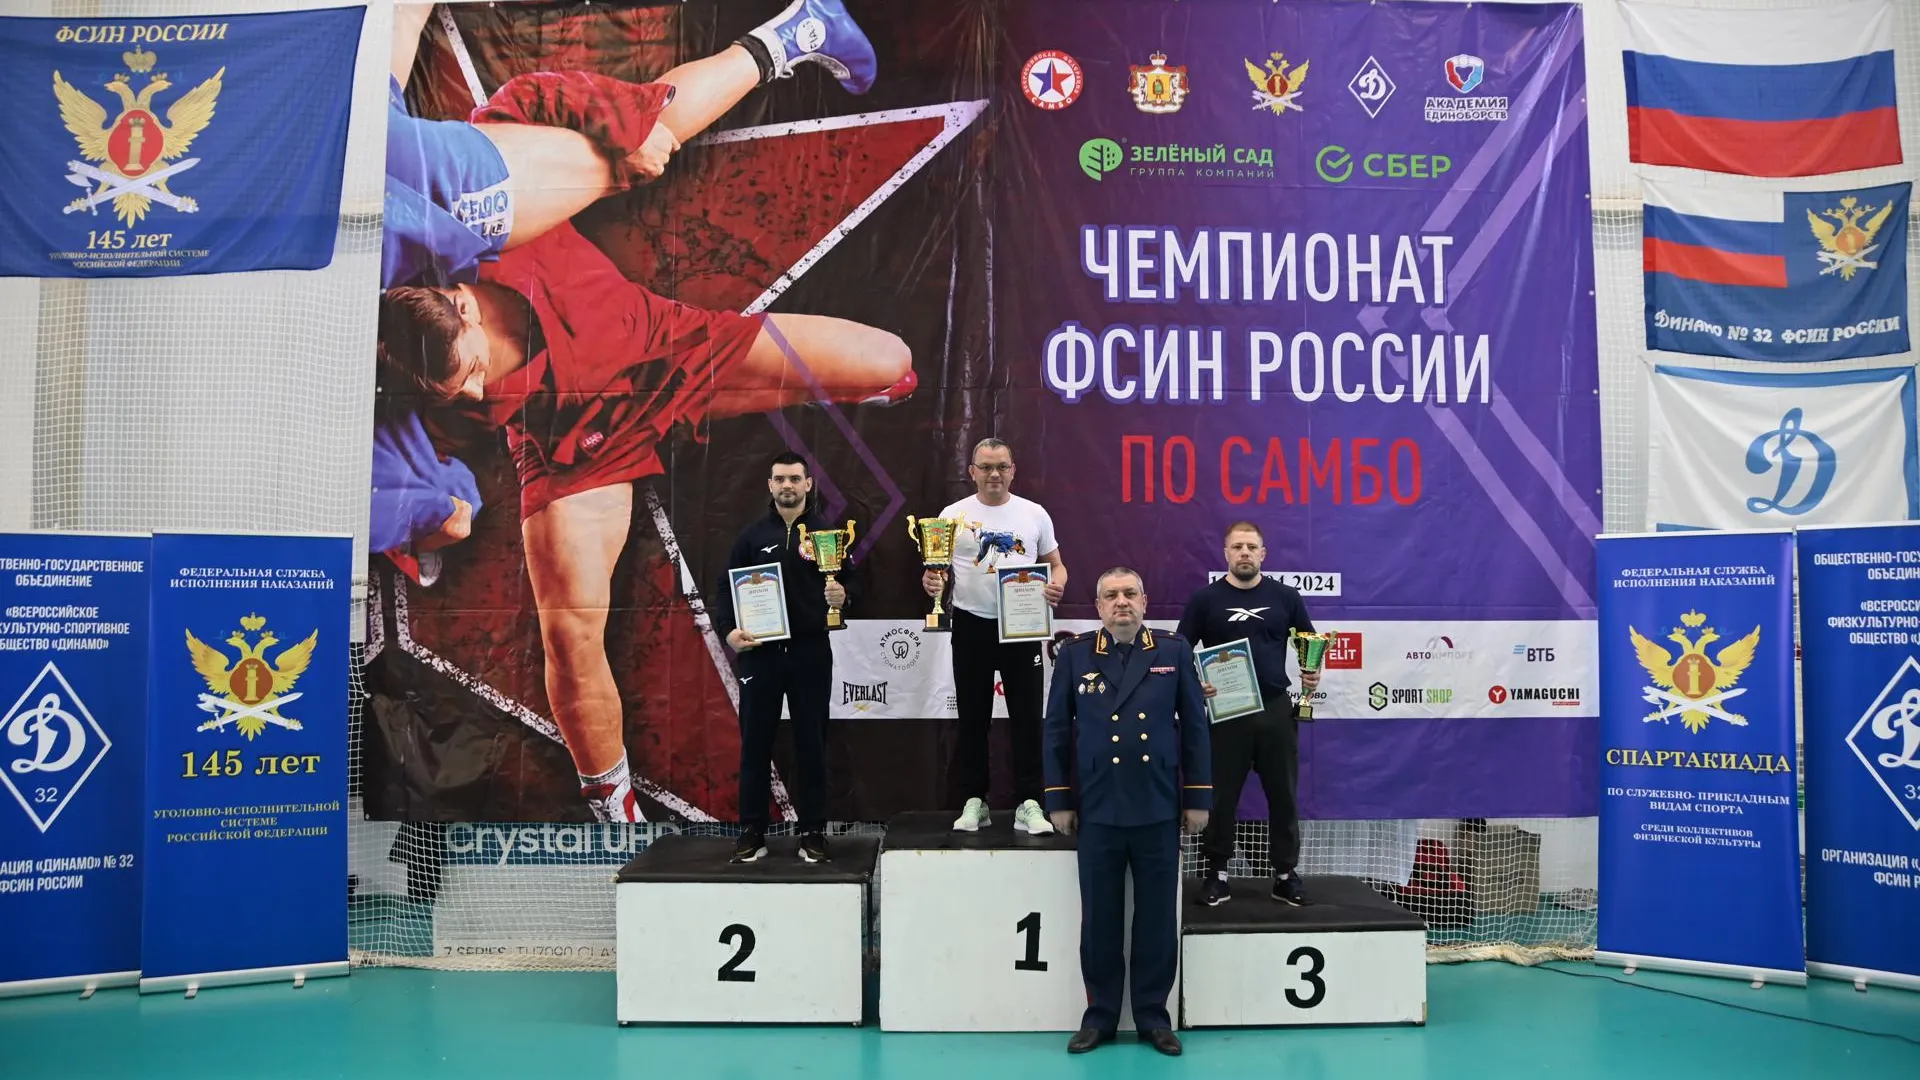 Чемпионат ФСИН России по самбо завершился в Подмосковье